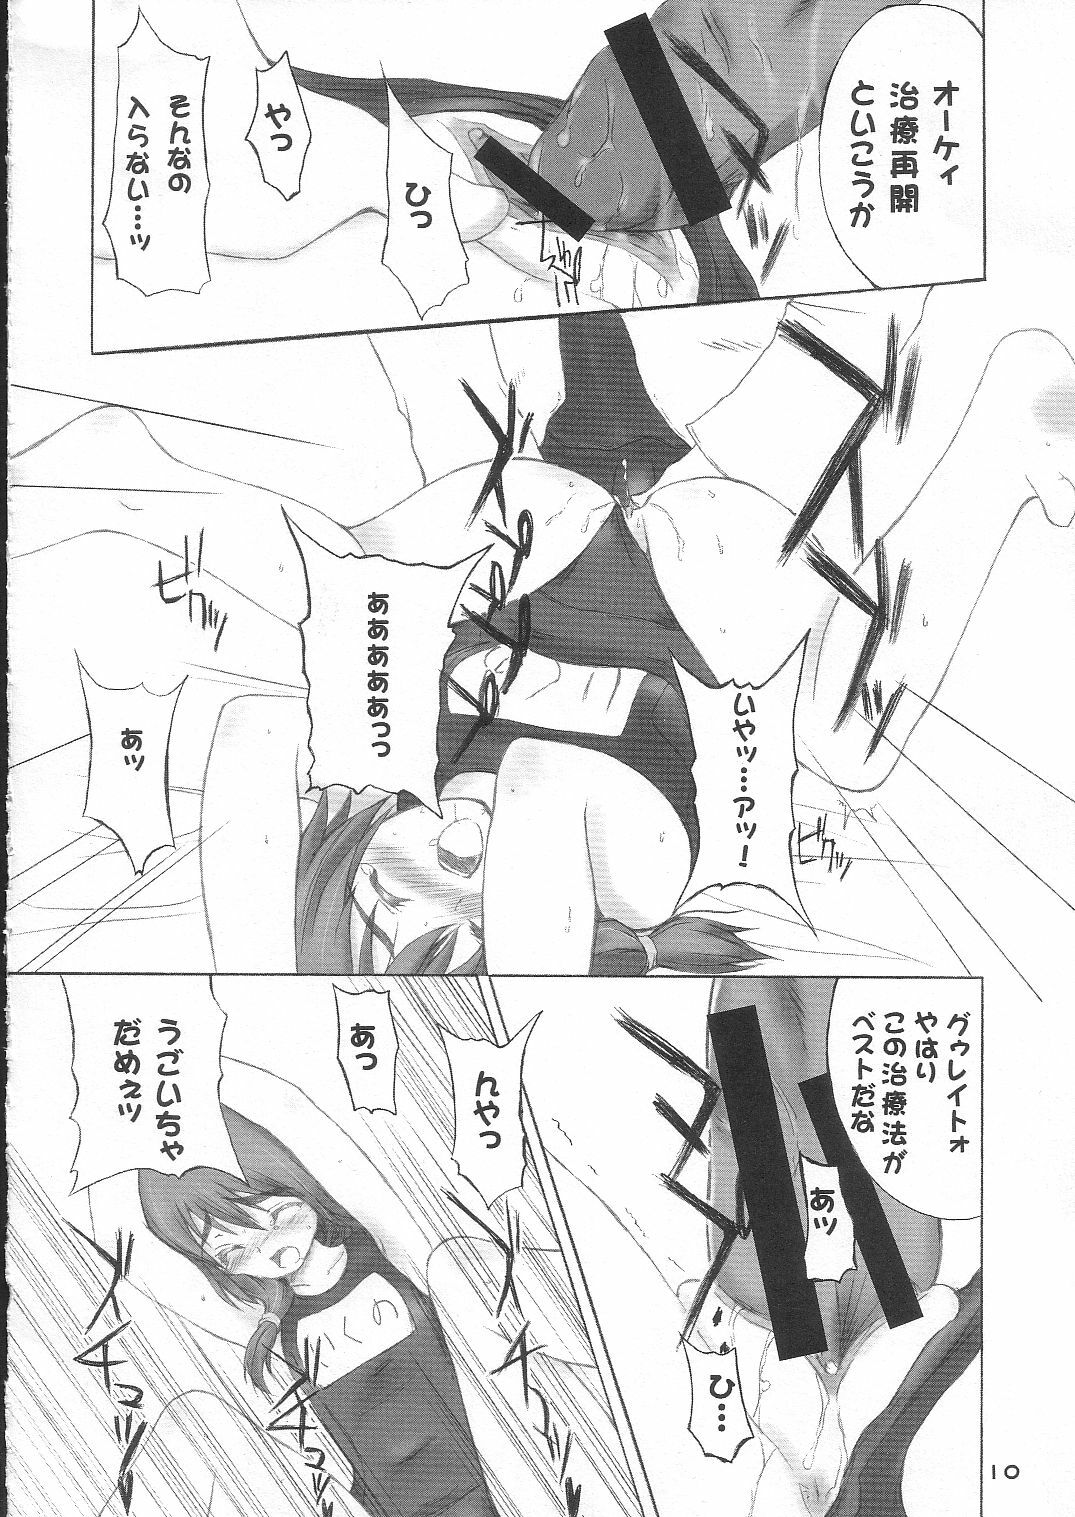 [4T] Ikuno Seikatsu Schmiz (To Heart 2) page 9 full